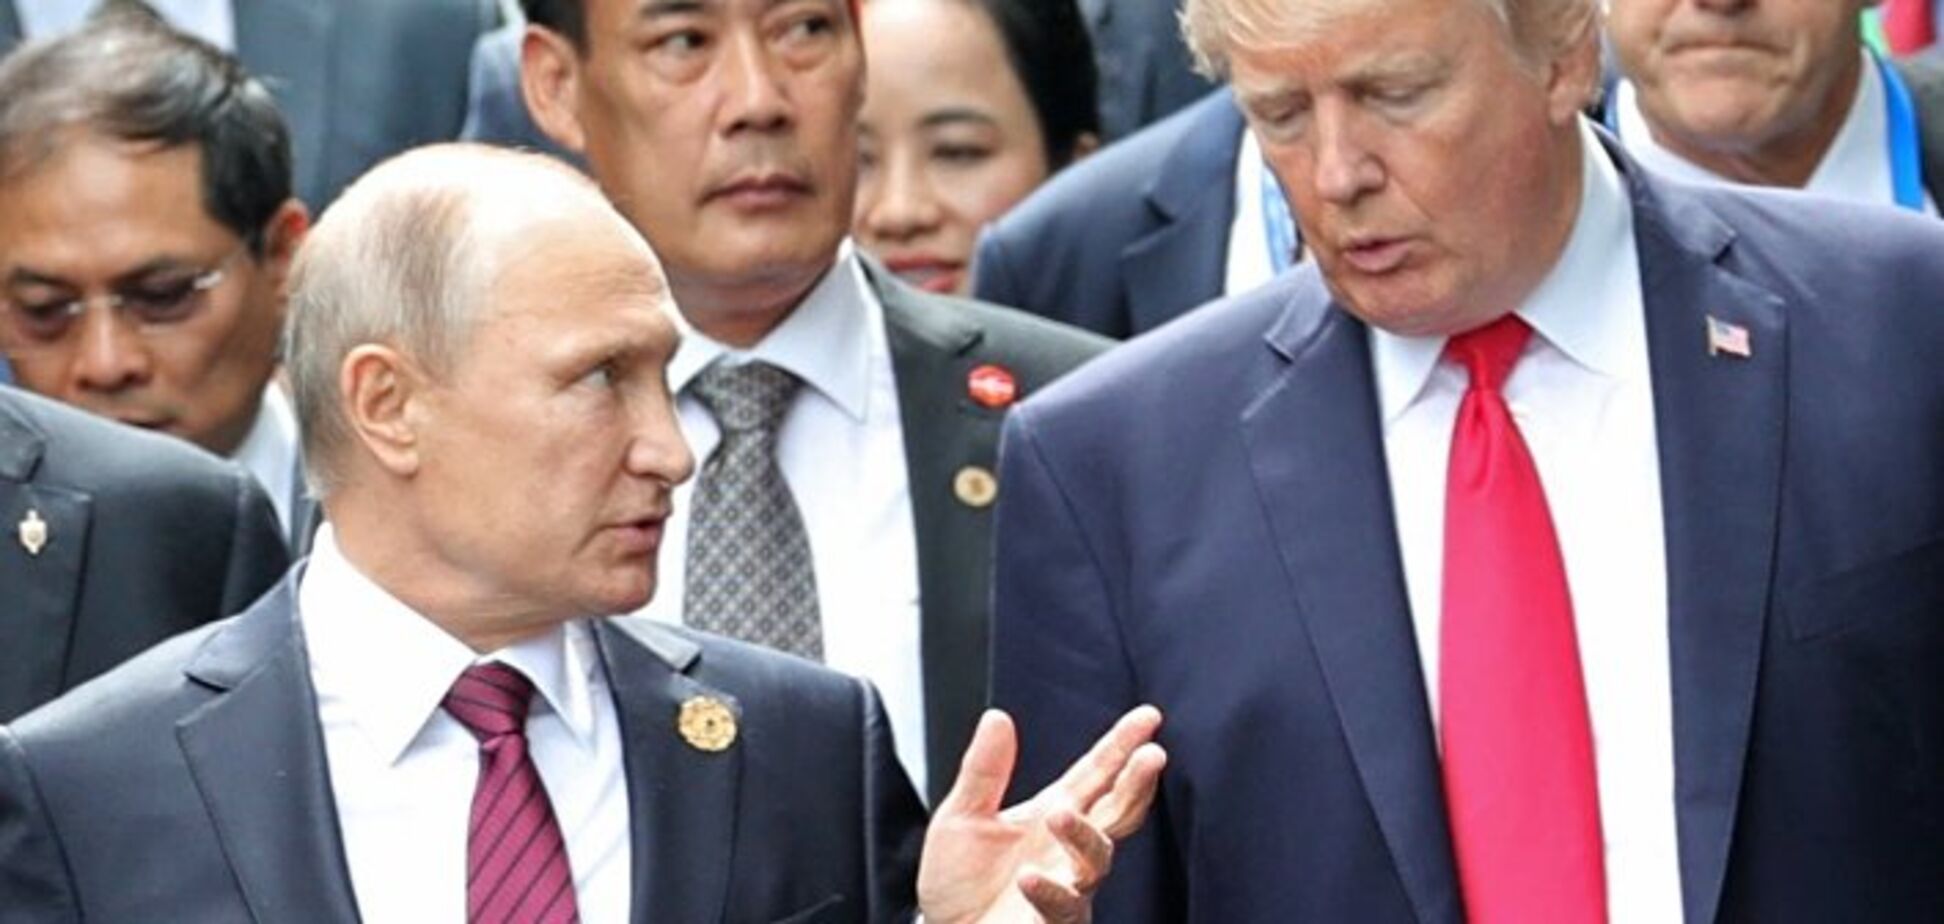 Отдаст ли Трамп Крым Путину? Эксперты дали прогноз Atlantic Council